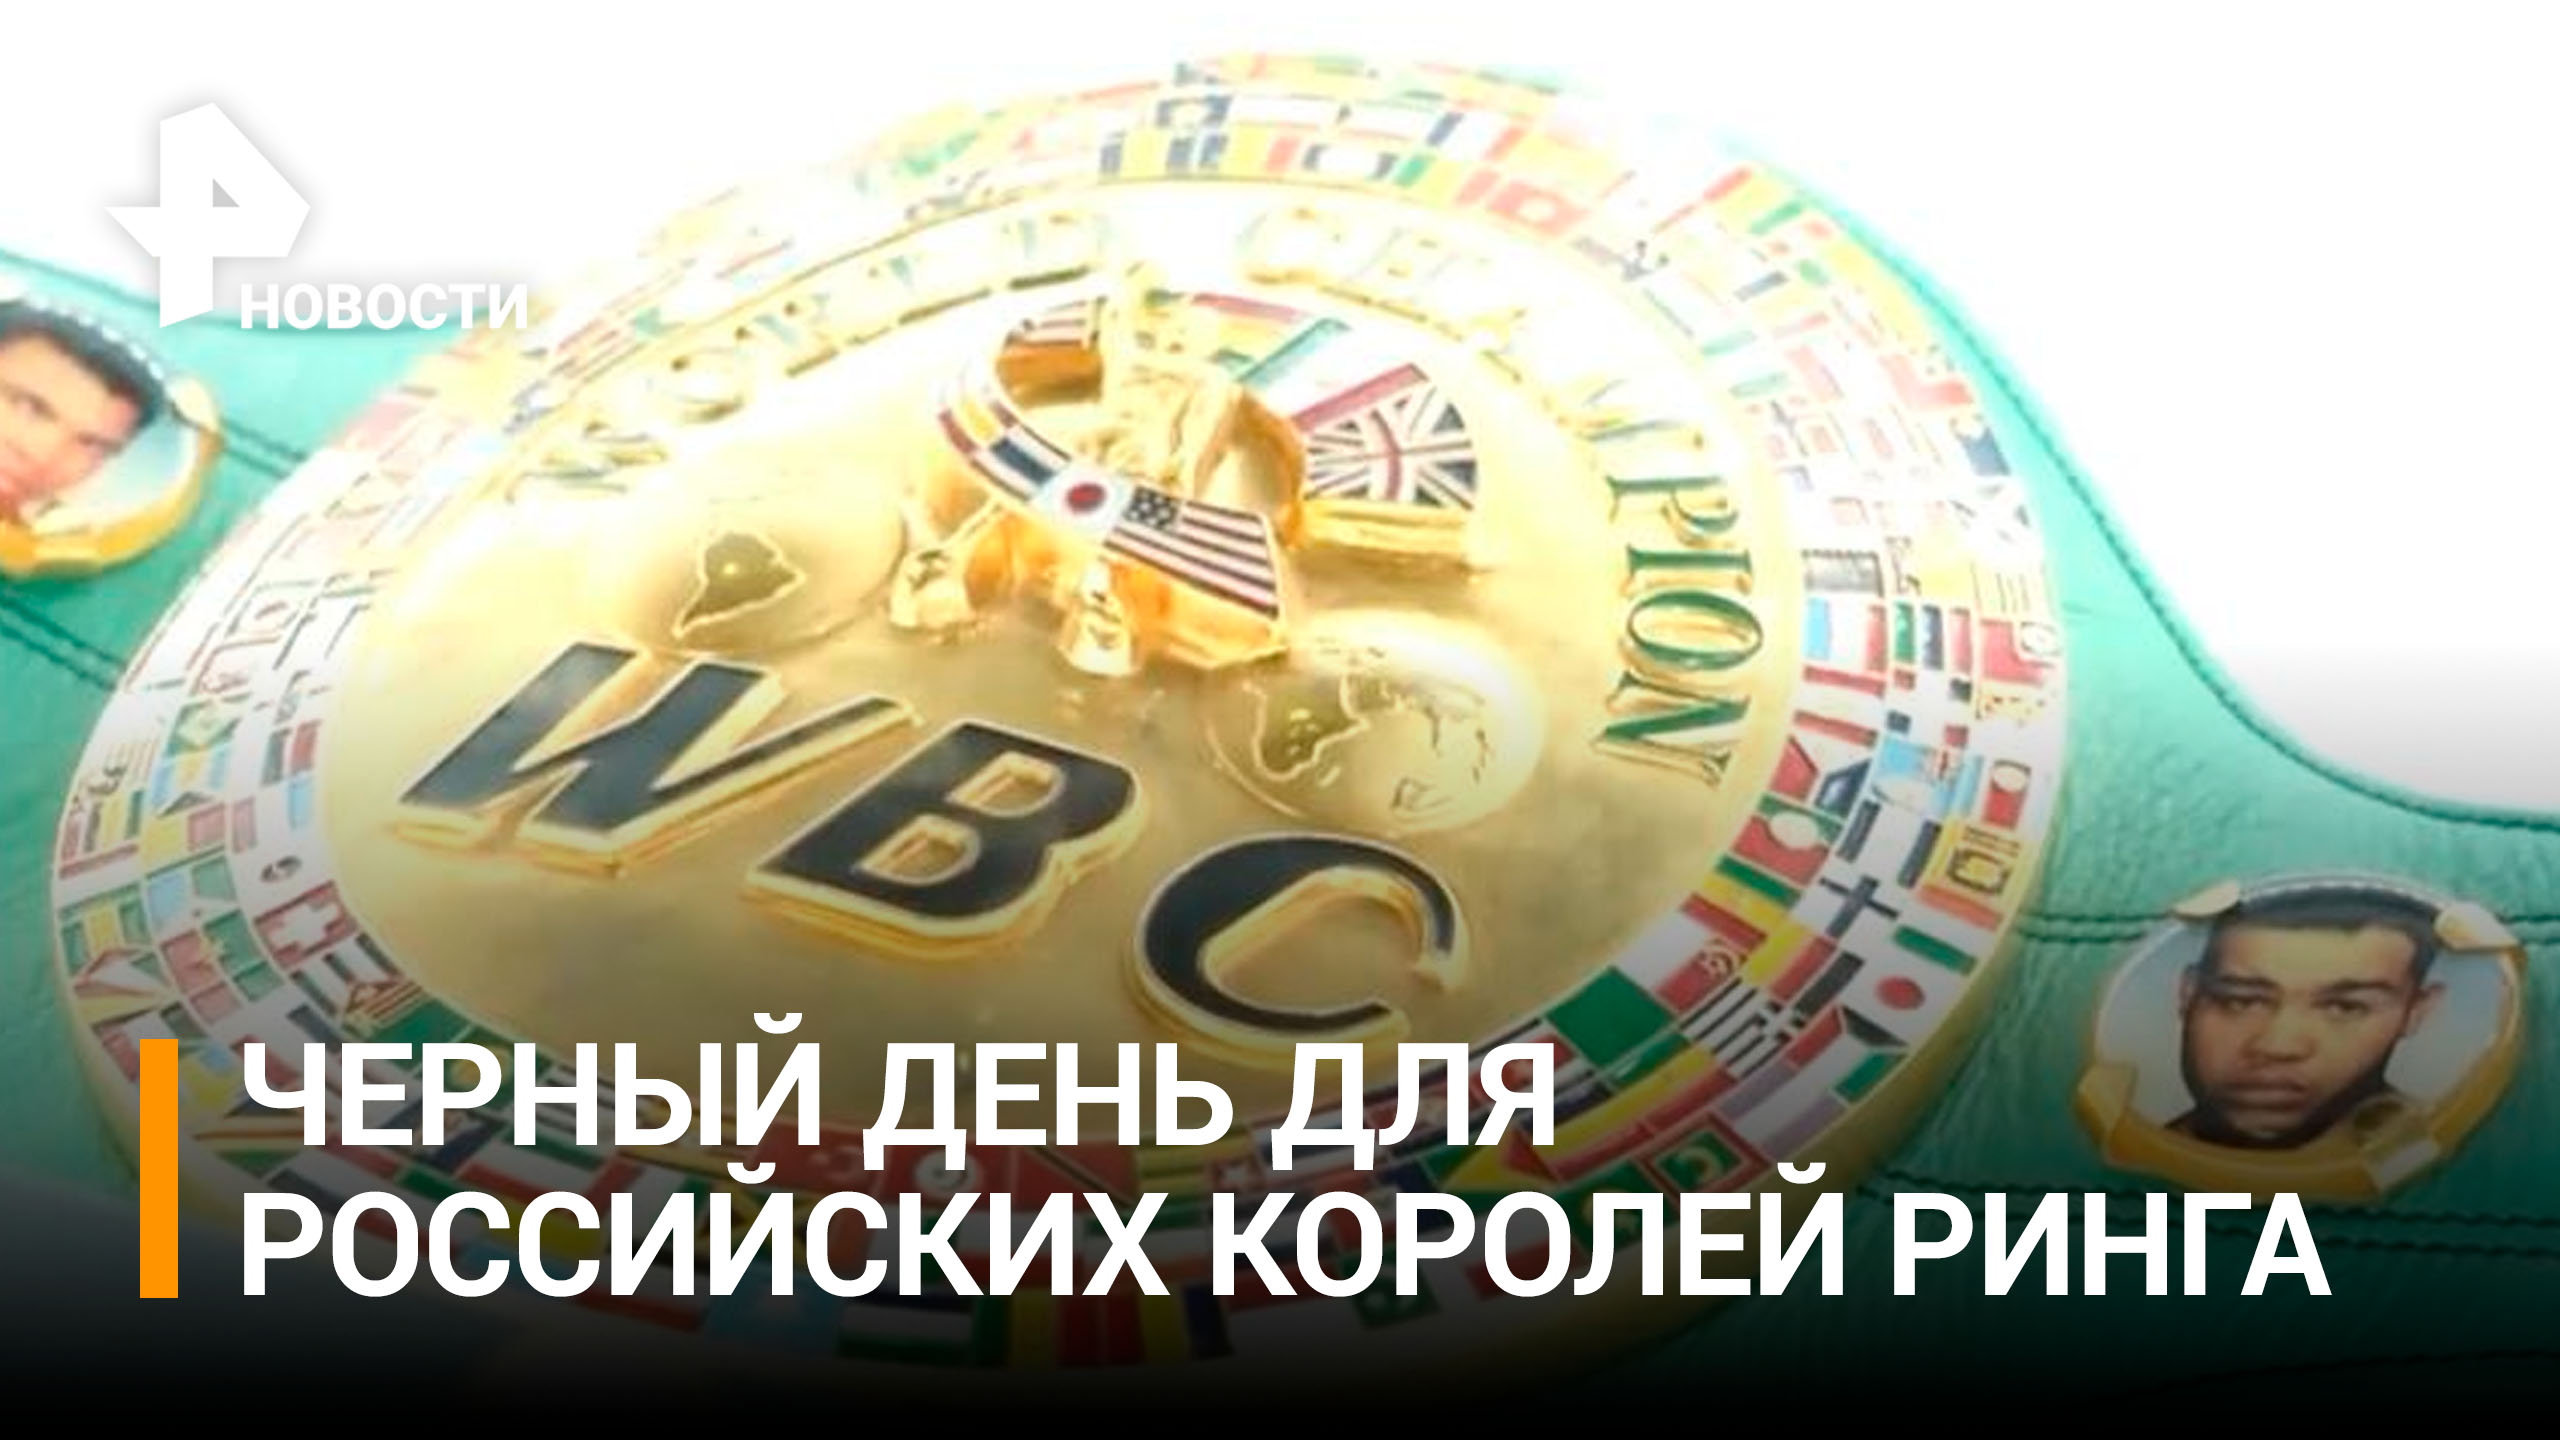 Как российские боксеры отреагировали на исключение из рейтинга WBC / РЕН Новости